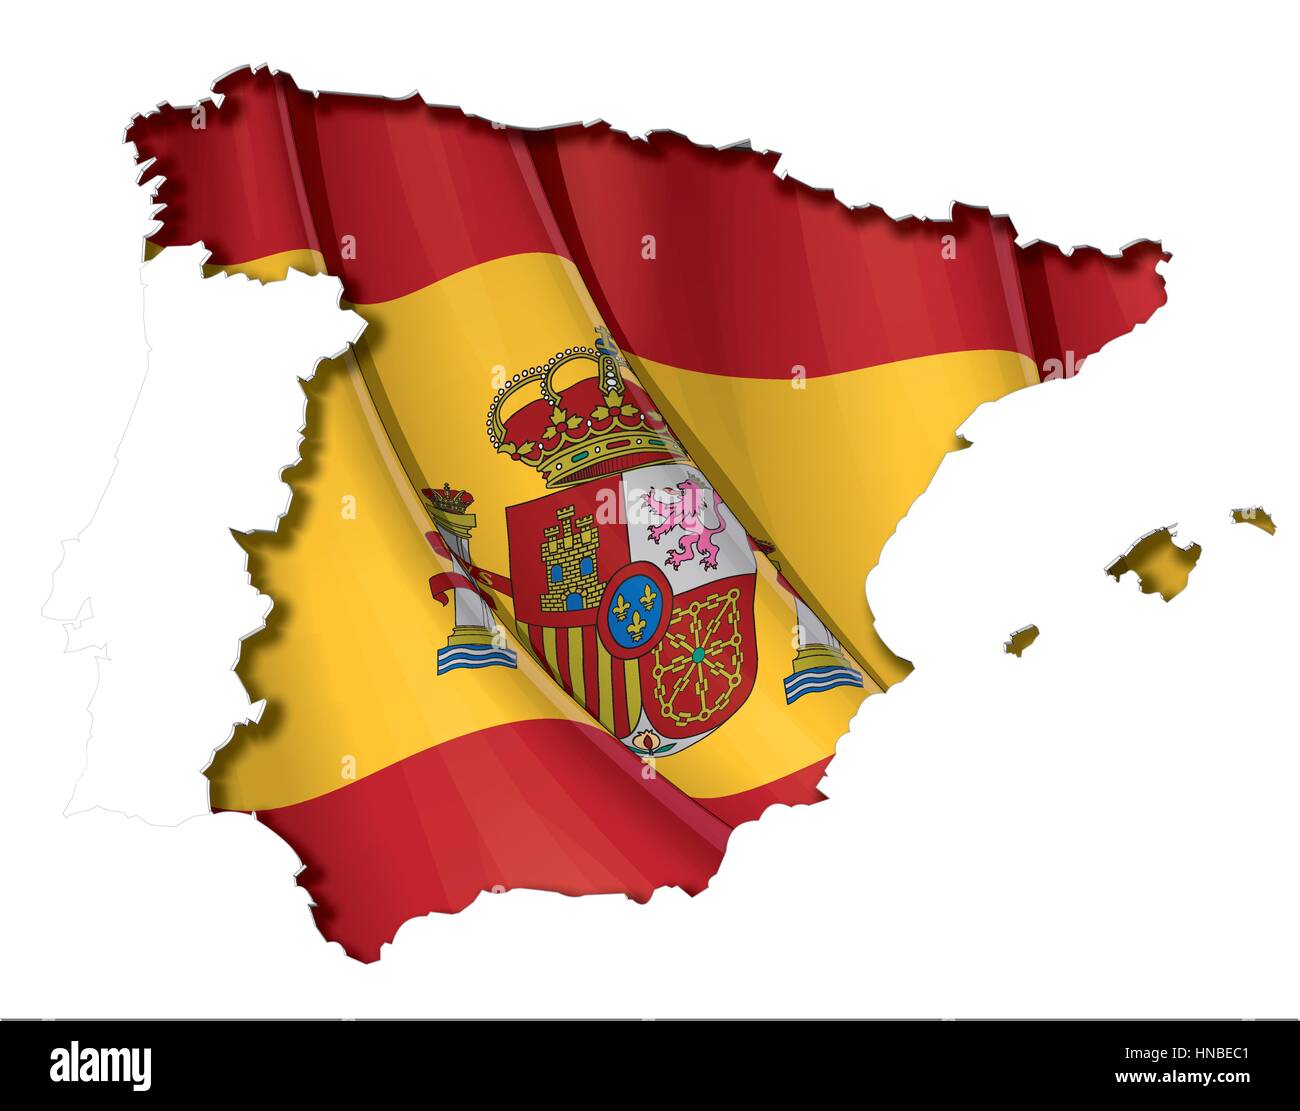 Mappa spagnolo cut-out, altamente dettagliate sul bordo di ombreggiatura, con un sventolando bandiere al di sotto. Il Settle spessore del taglio-fuori confine segue il inn Illustrazione Vettoriale